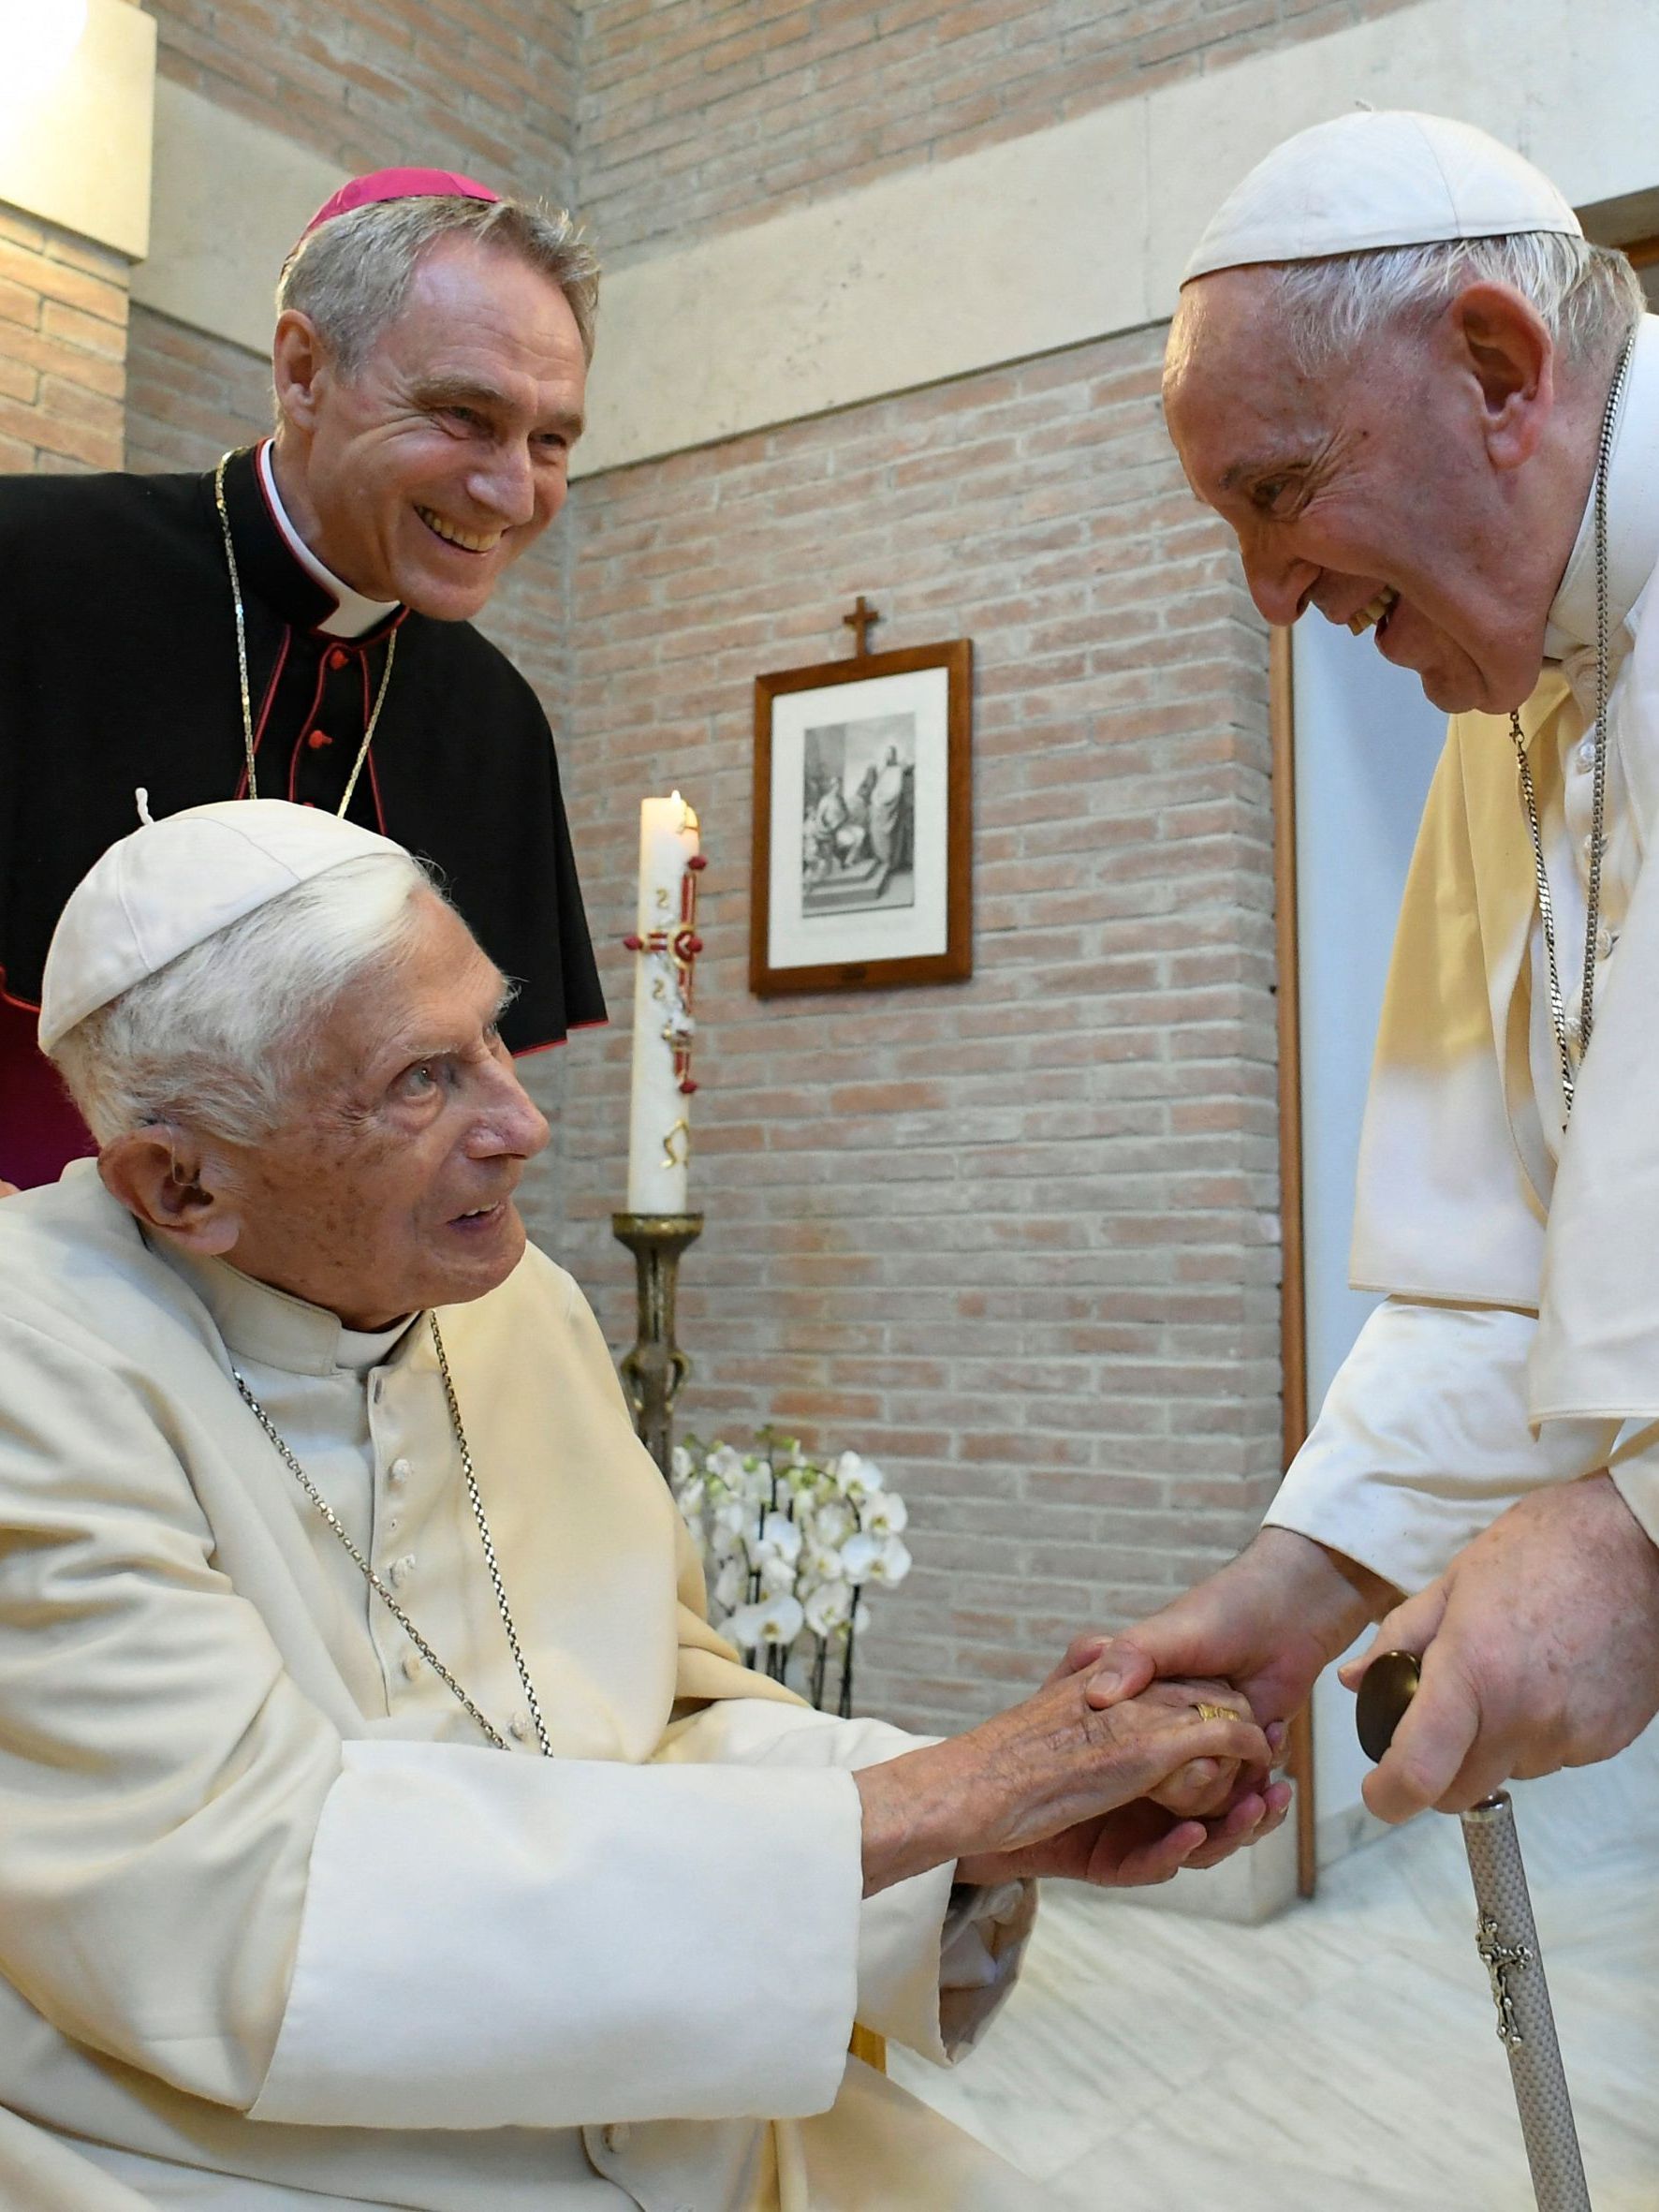 Papst Franziskus grüßt seinen emeritierten Vorgänger während des Besuchs der 20 neuen Kardinäle im Vatikan im August 2022.